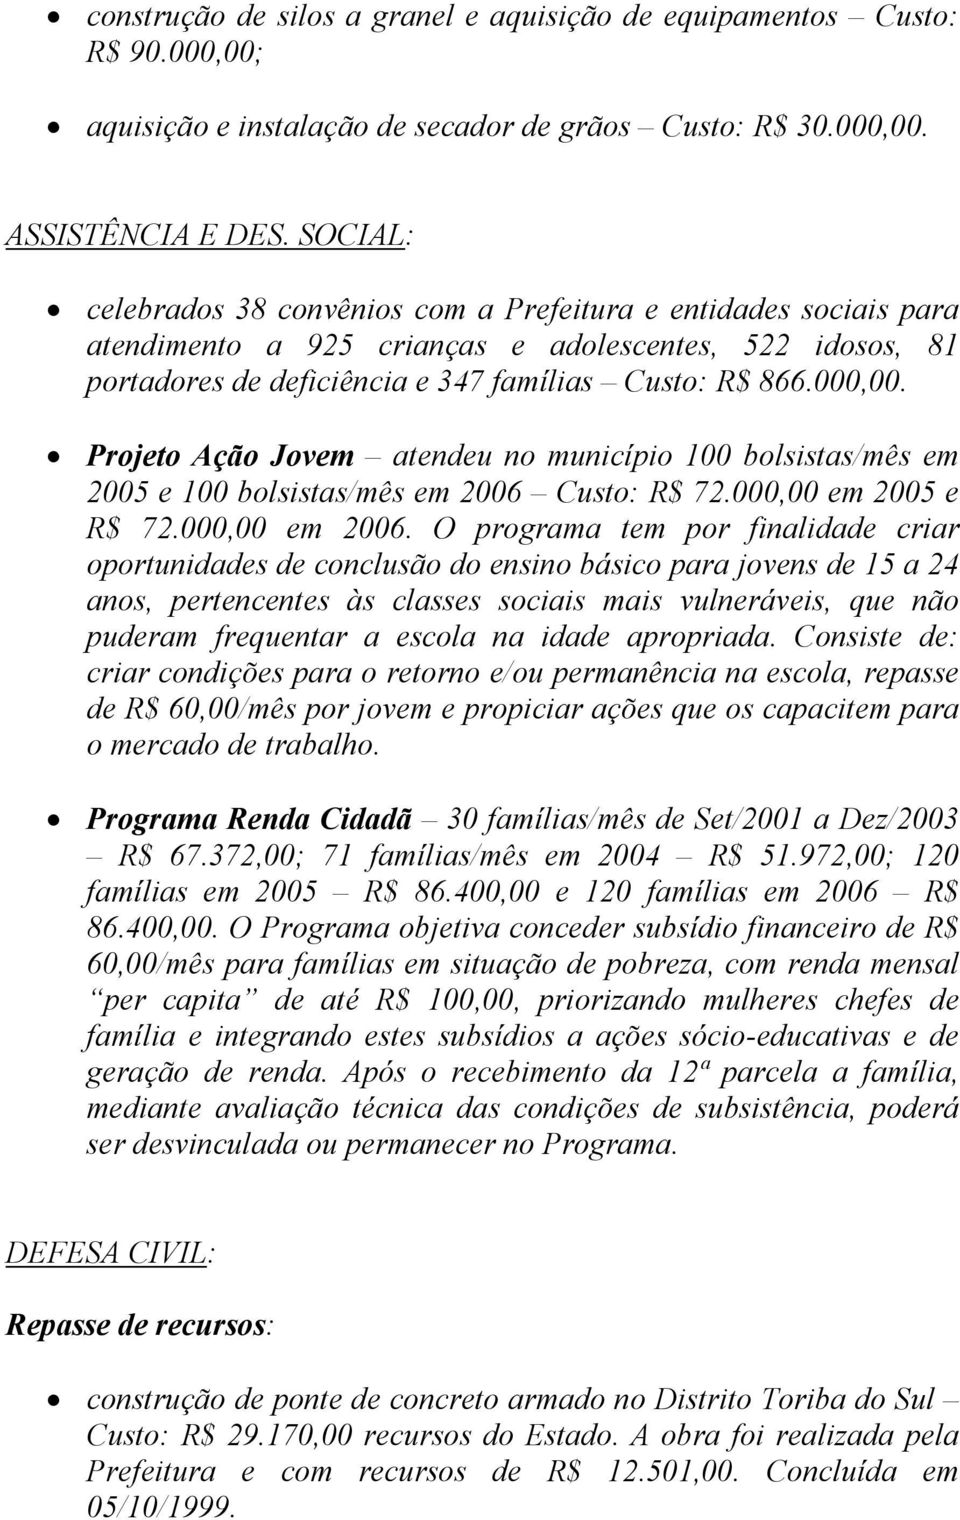 Projeto Ação Jovem atendeu no município 100 bolsistas/mês em 2005 e 100 bolsistas/mês em 2006 Custo: R$ 72.000,00 em 2005 e R$ 72.000,00 em 2006.